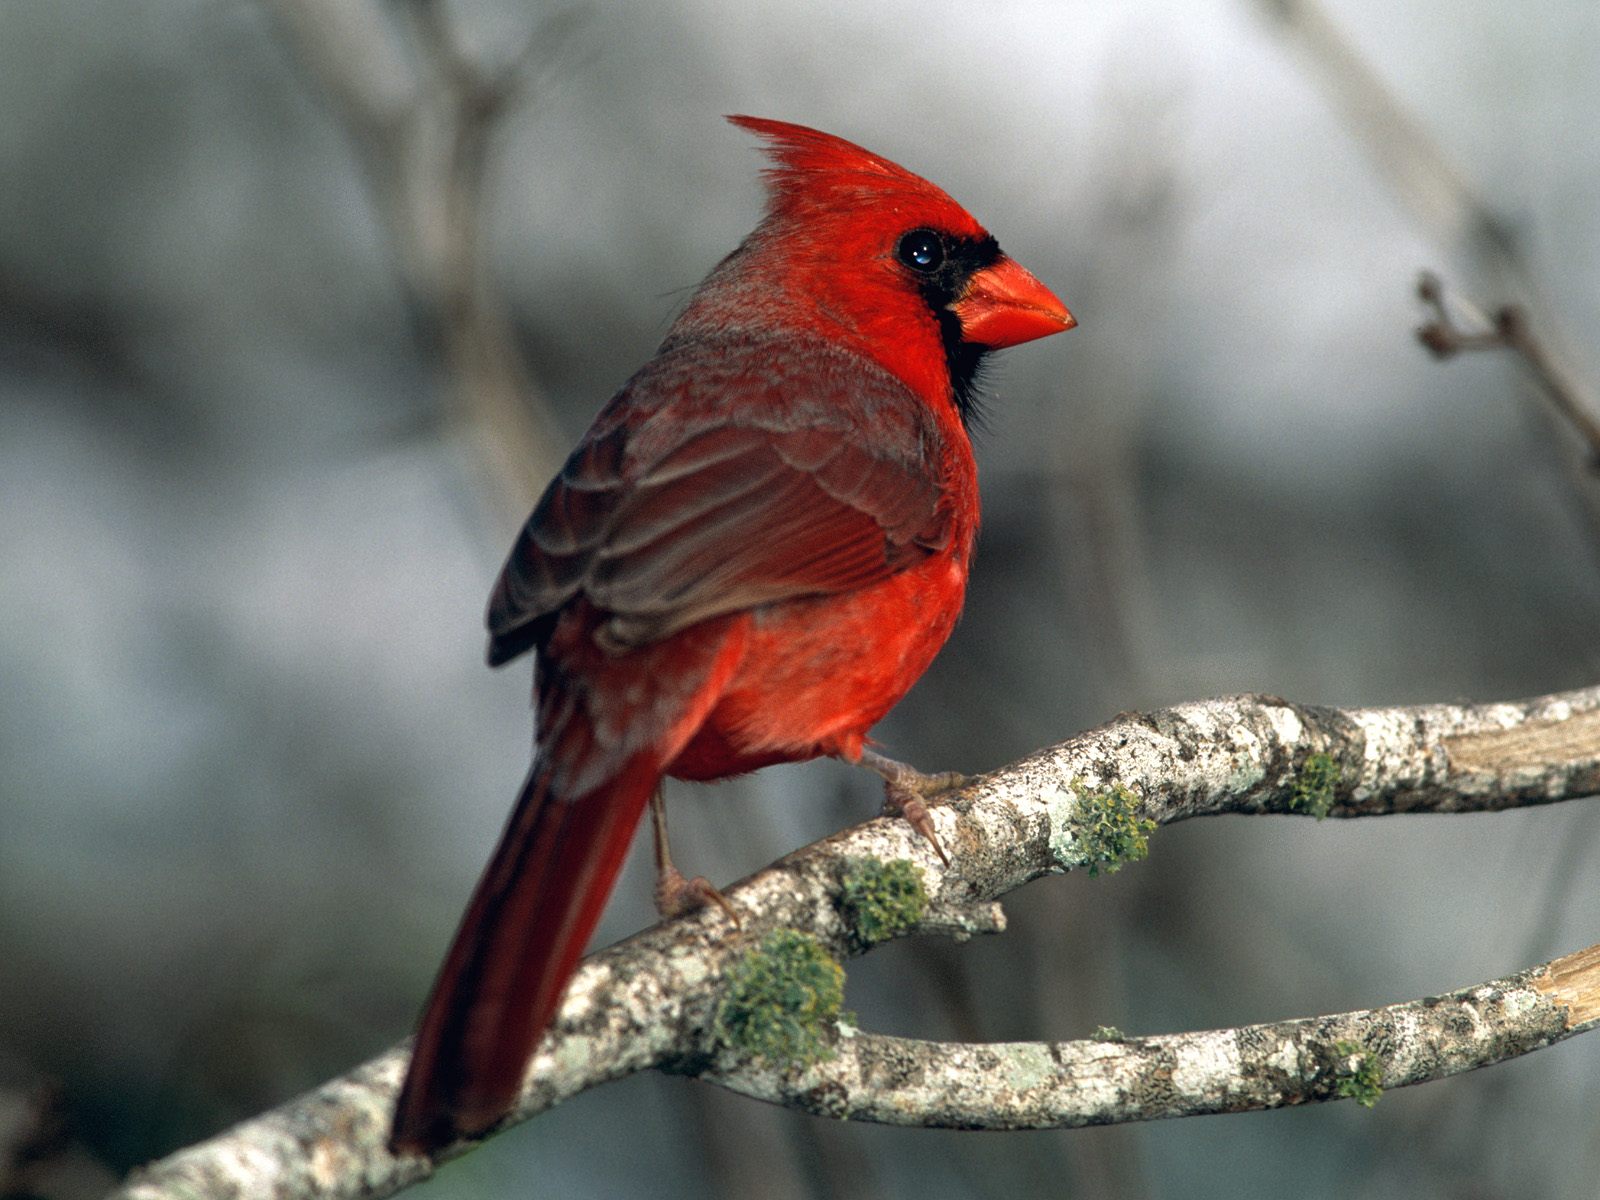 The Cardinal Bird by William Davis Gallagher